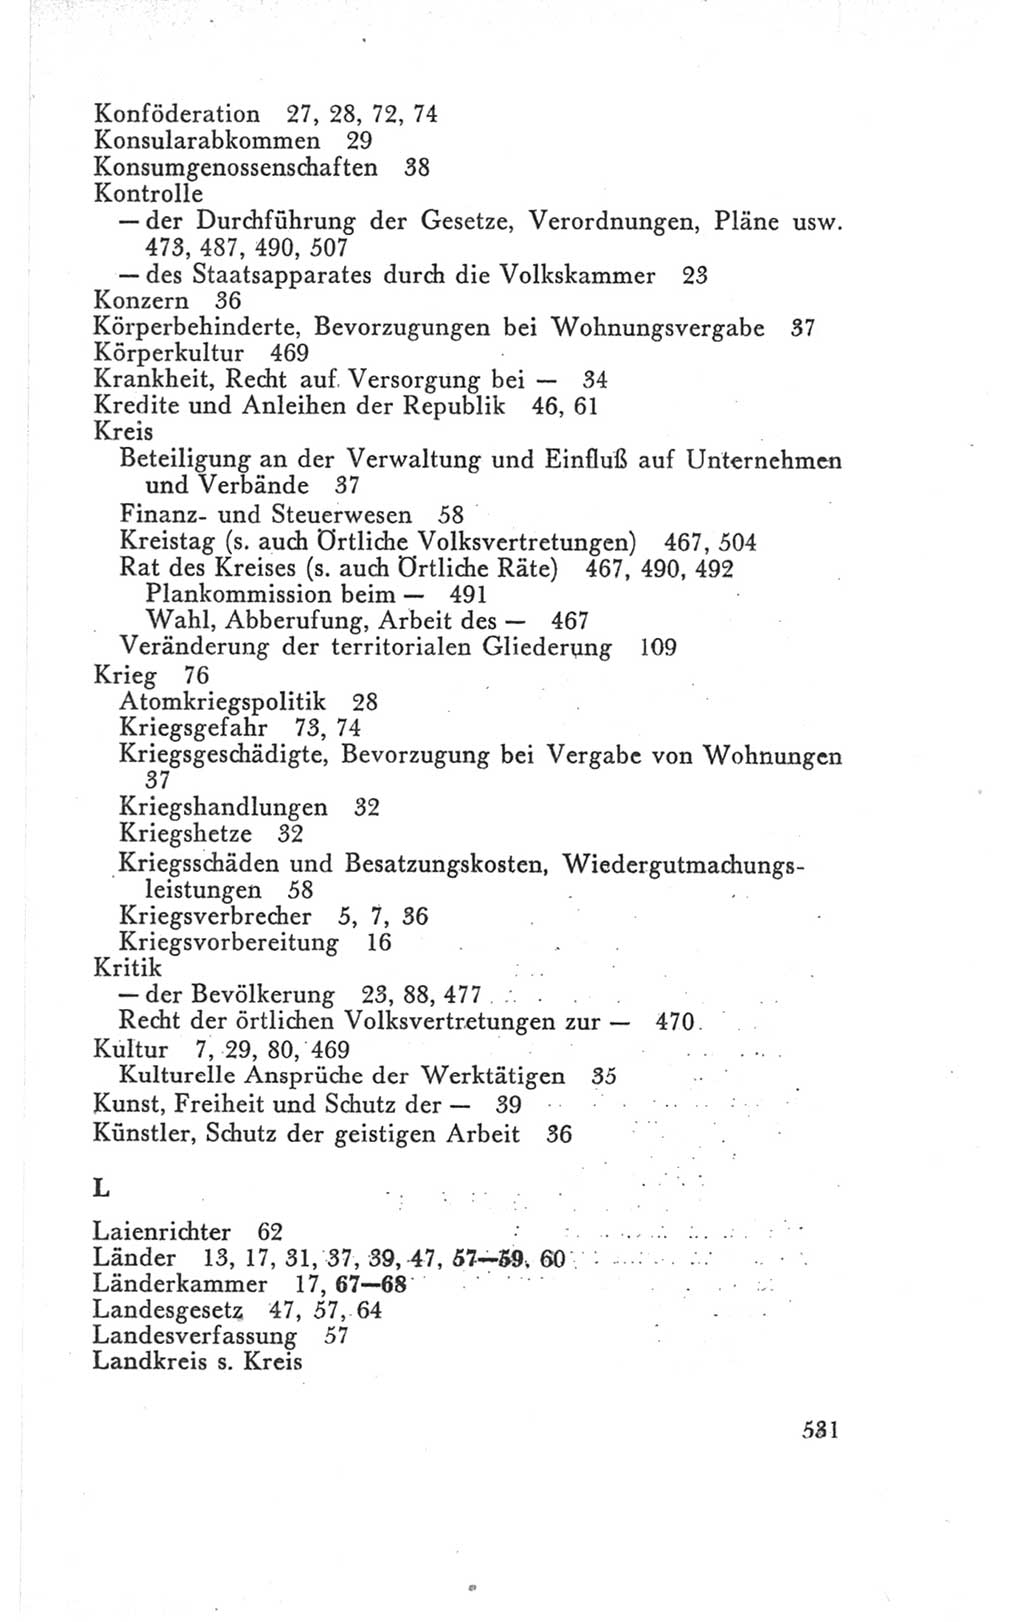 Handbuch der Volkskammer (VK) der Deutschen Demokratischen Republik (DDR), 3. Wahlperiode 1958-1963, Seite 531 (Hdb. VK. DDR 3. WP. 1958-1963, S. 531)